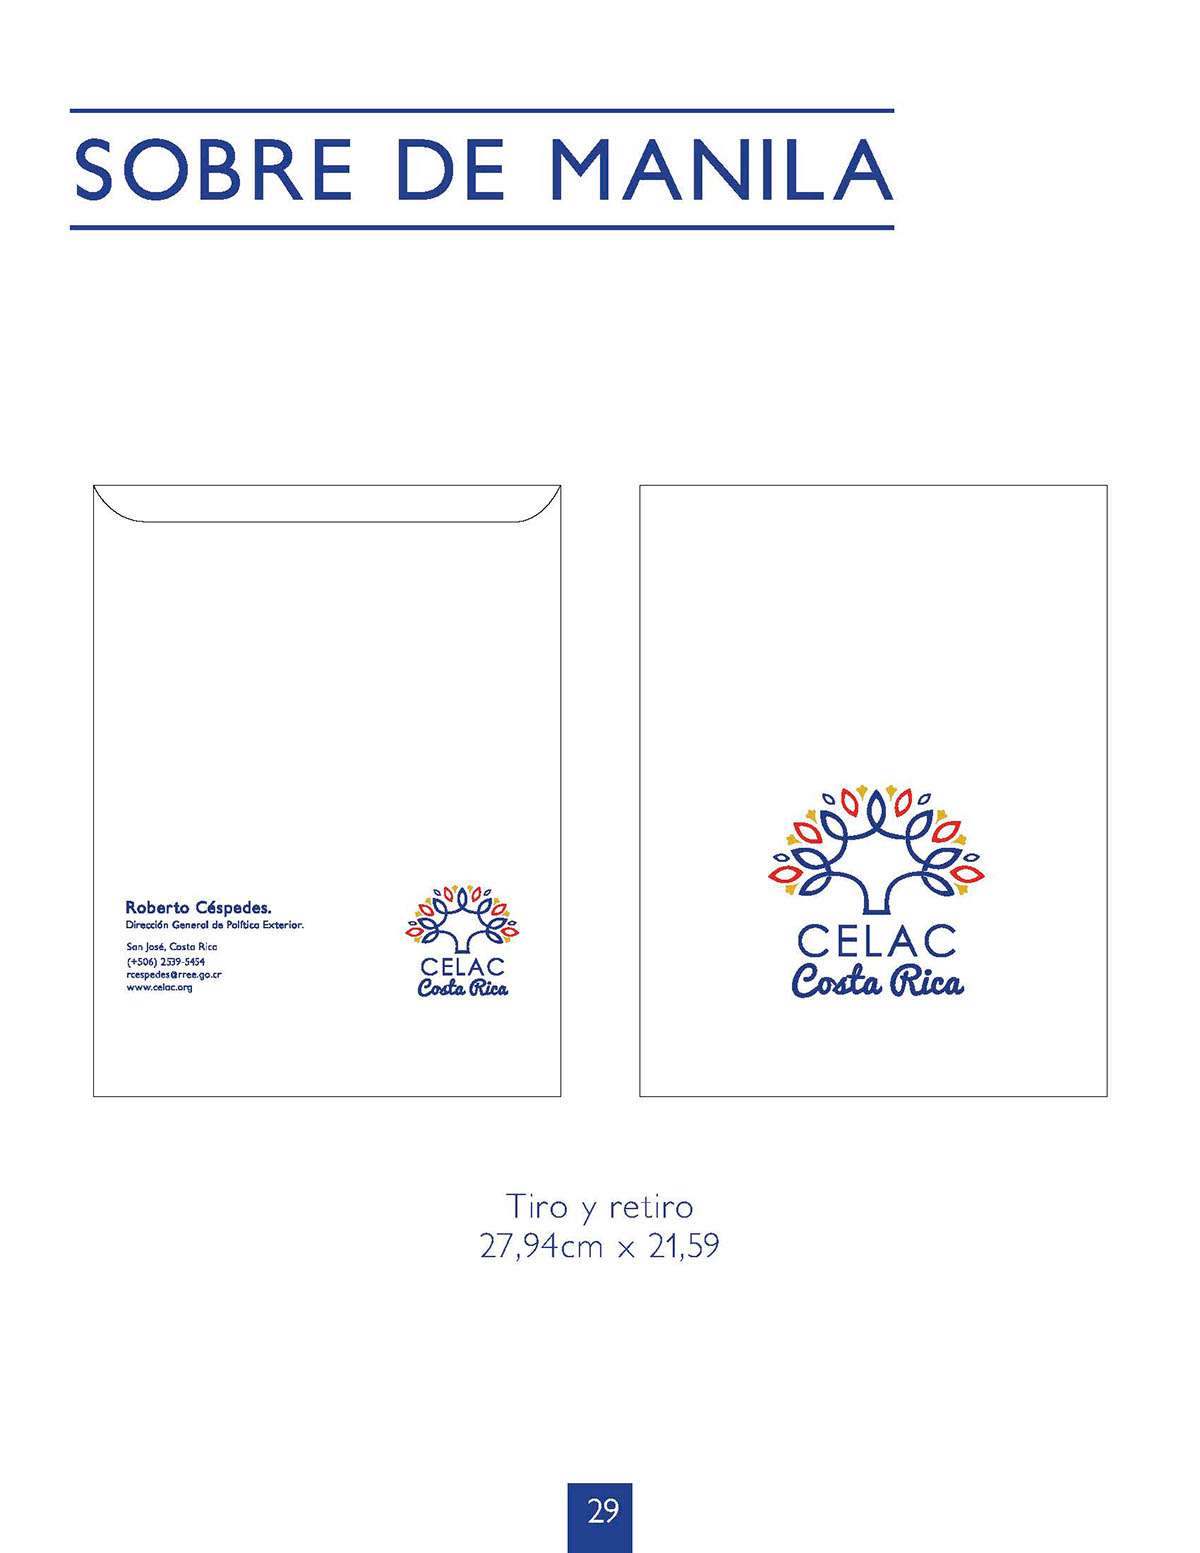 brand Costa Rica CELAC logo logo celac logo brand logo branding